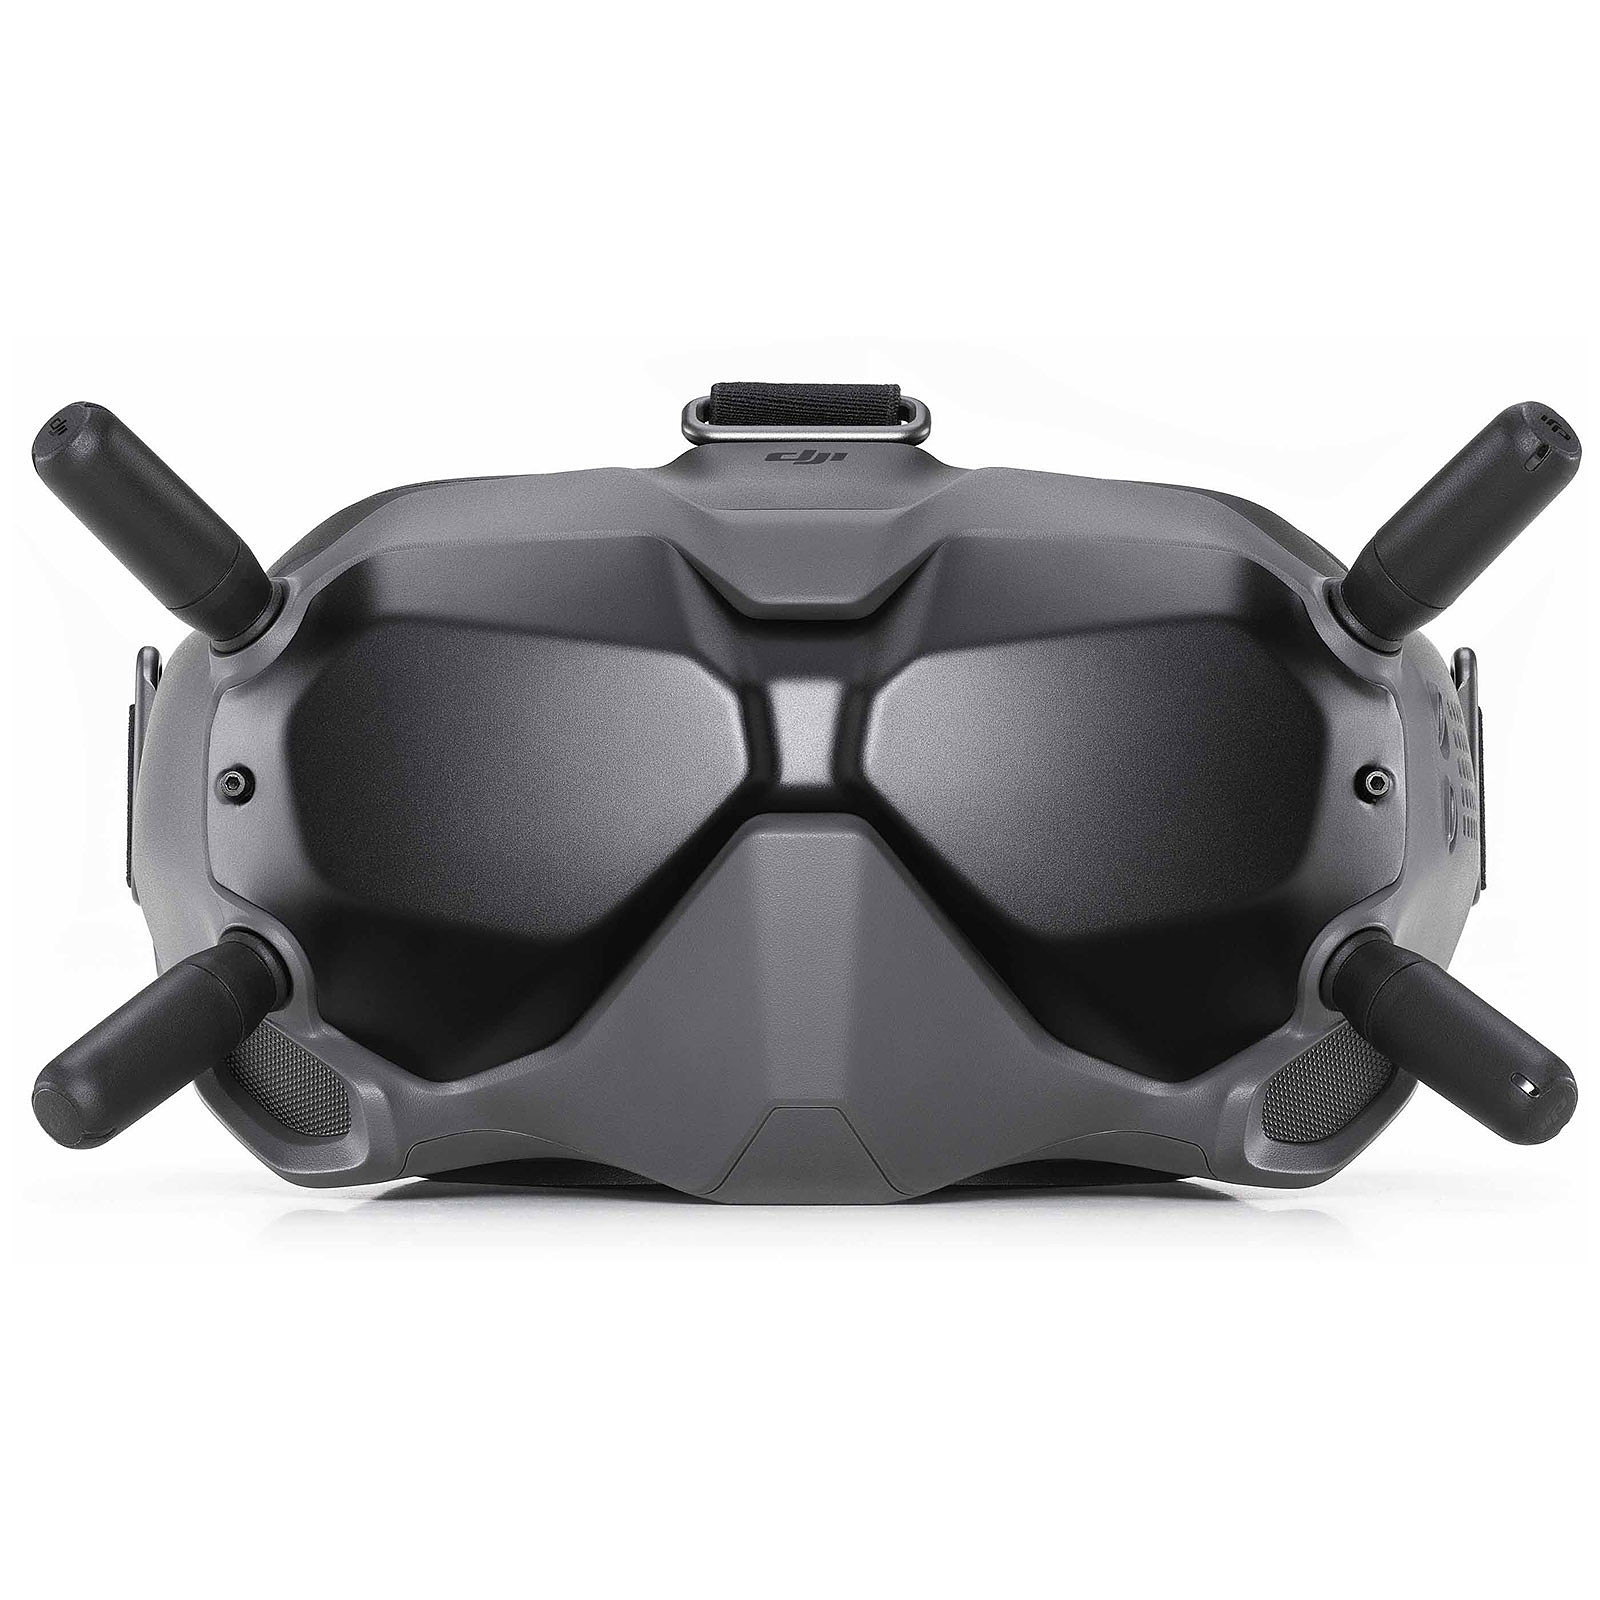 DJI FPV Goggles V2 - Accessoire drone DJI